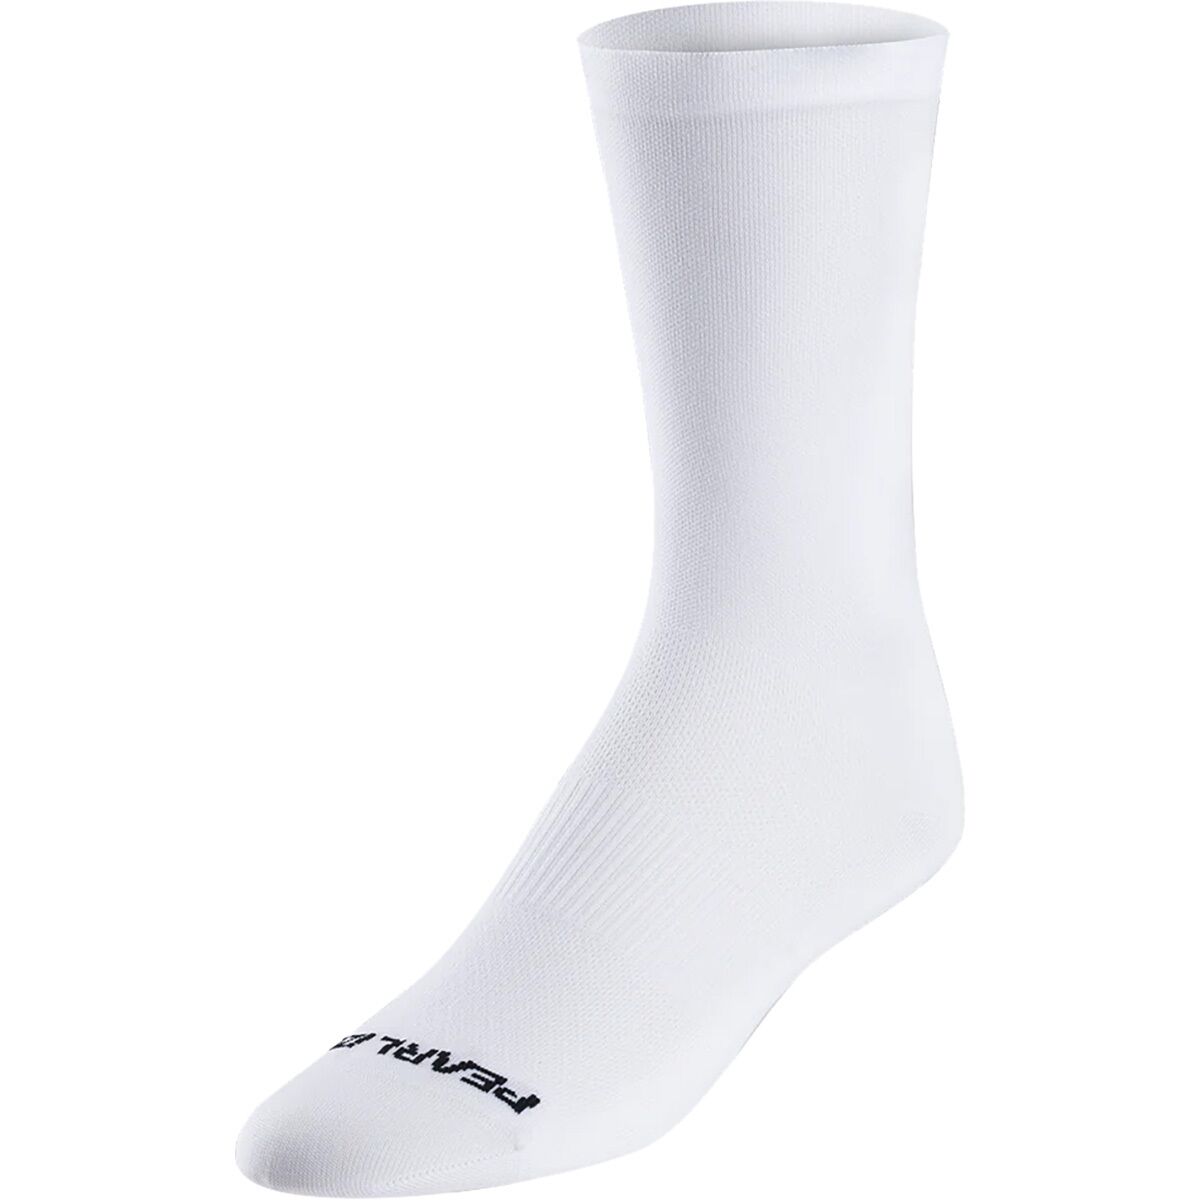 PEARL iZUMi Transfer Air 7in Sock - Men's